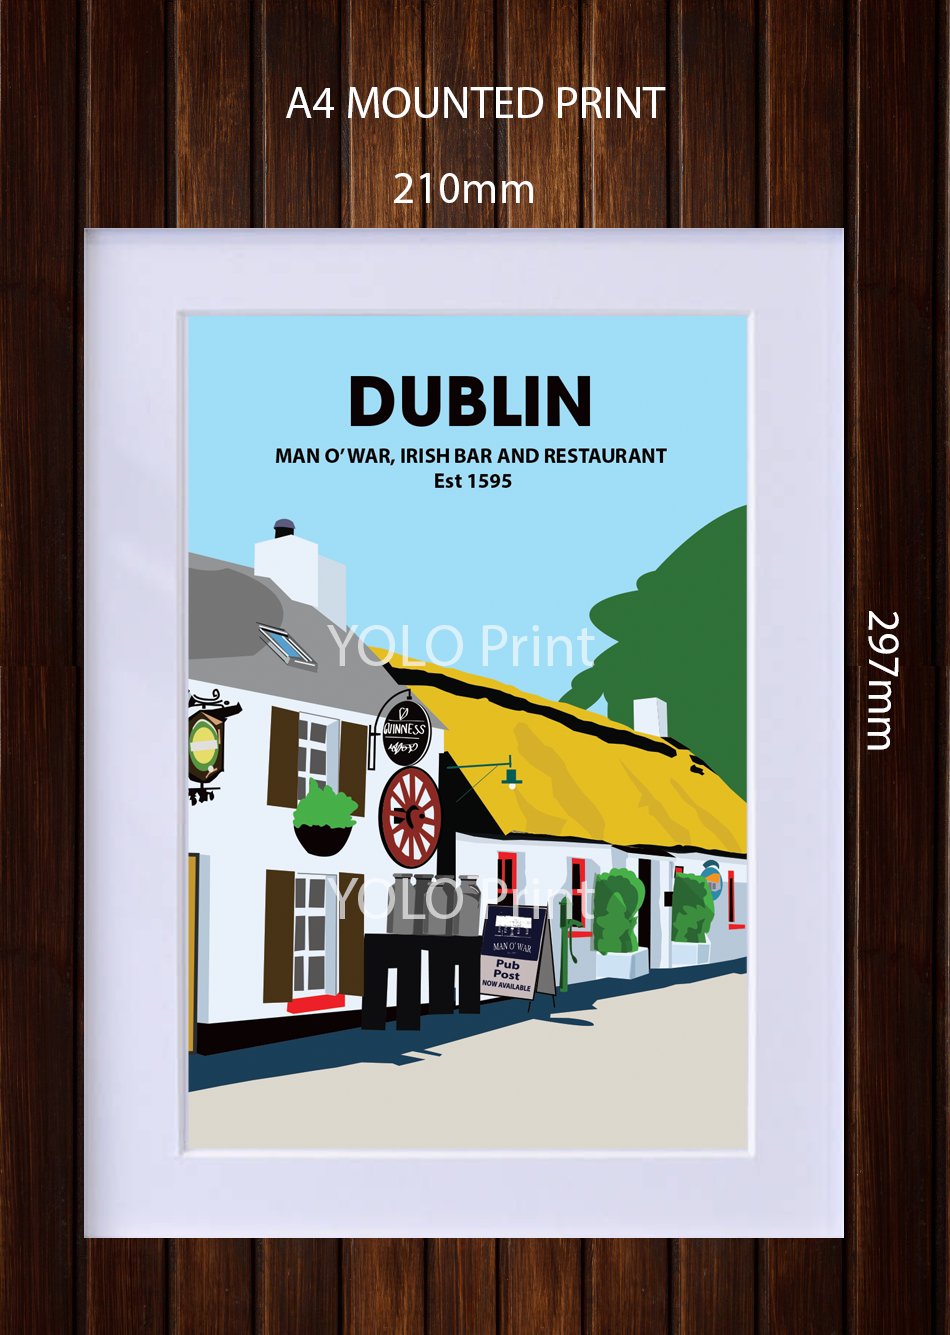 Dublin Postcard or A4 Mounted Print  - Man O'War Pub 2